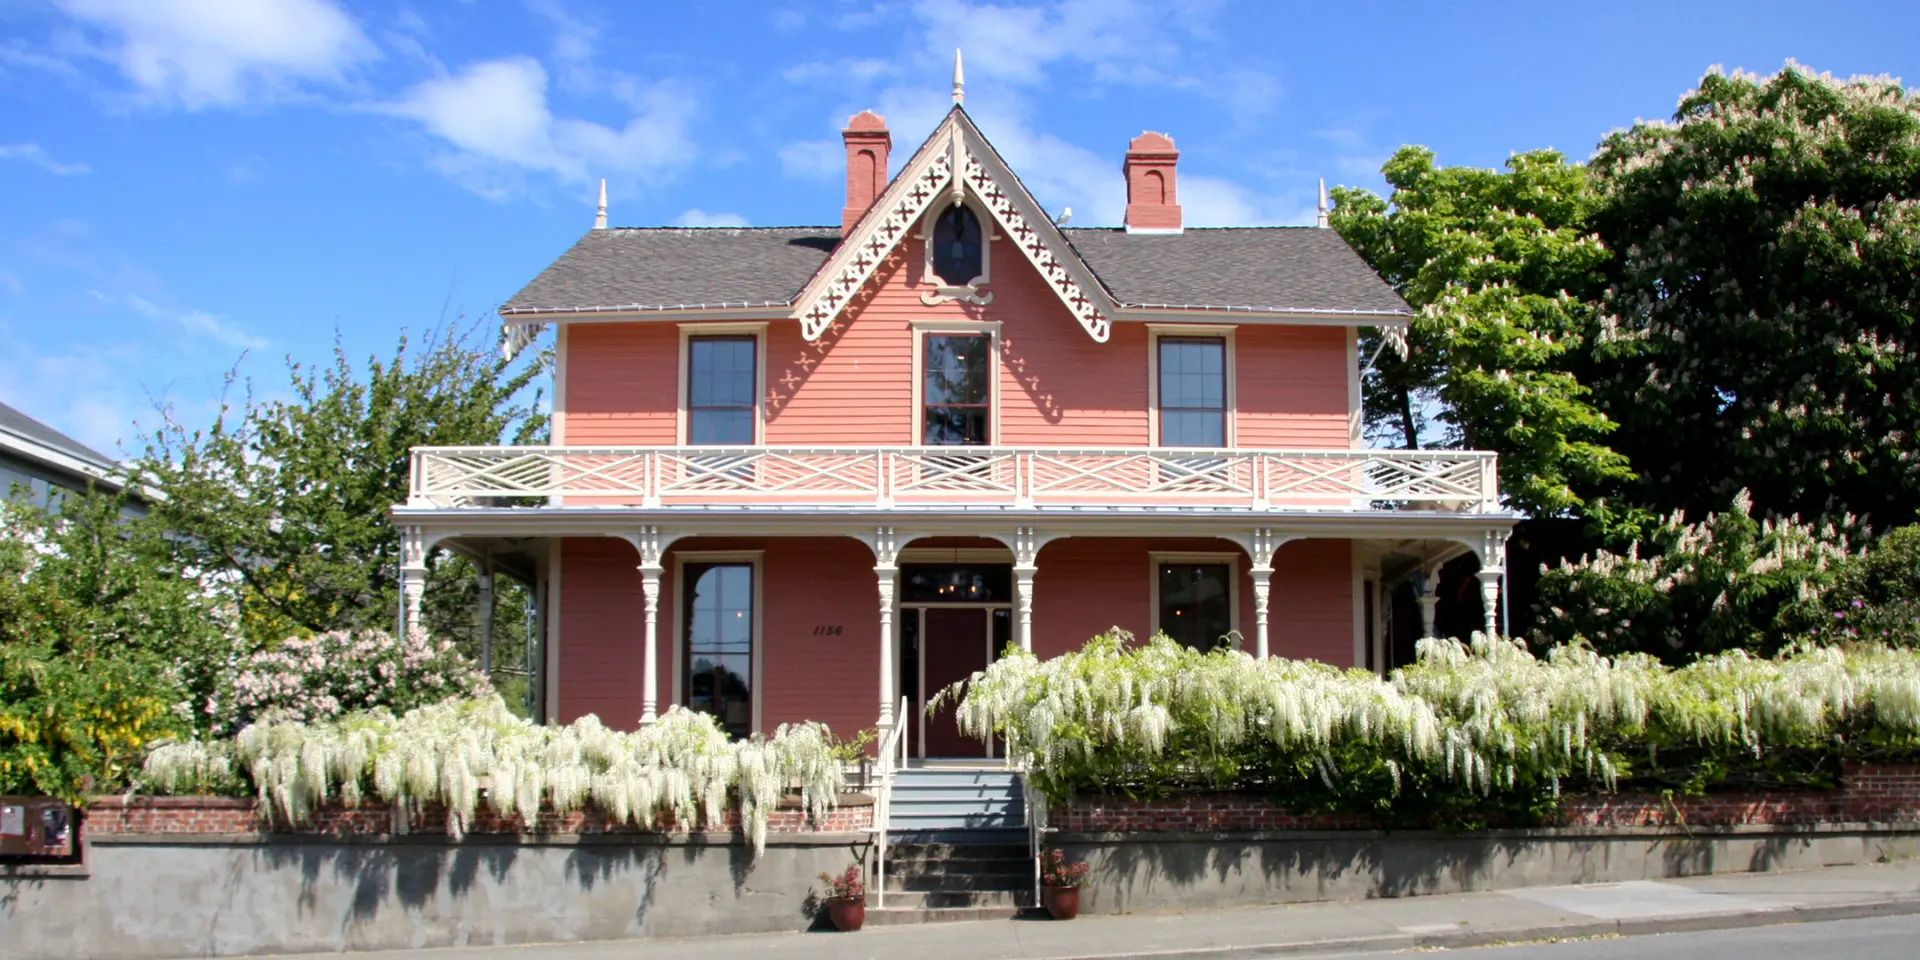 Wentworth Villa was built in 1863, restored in 2016